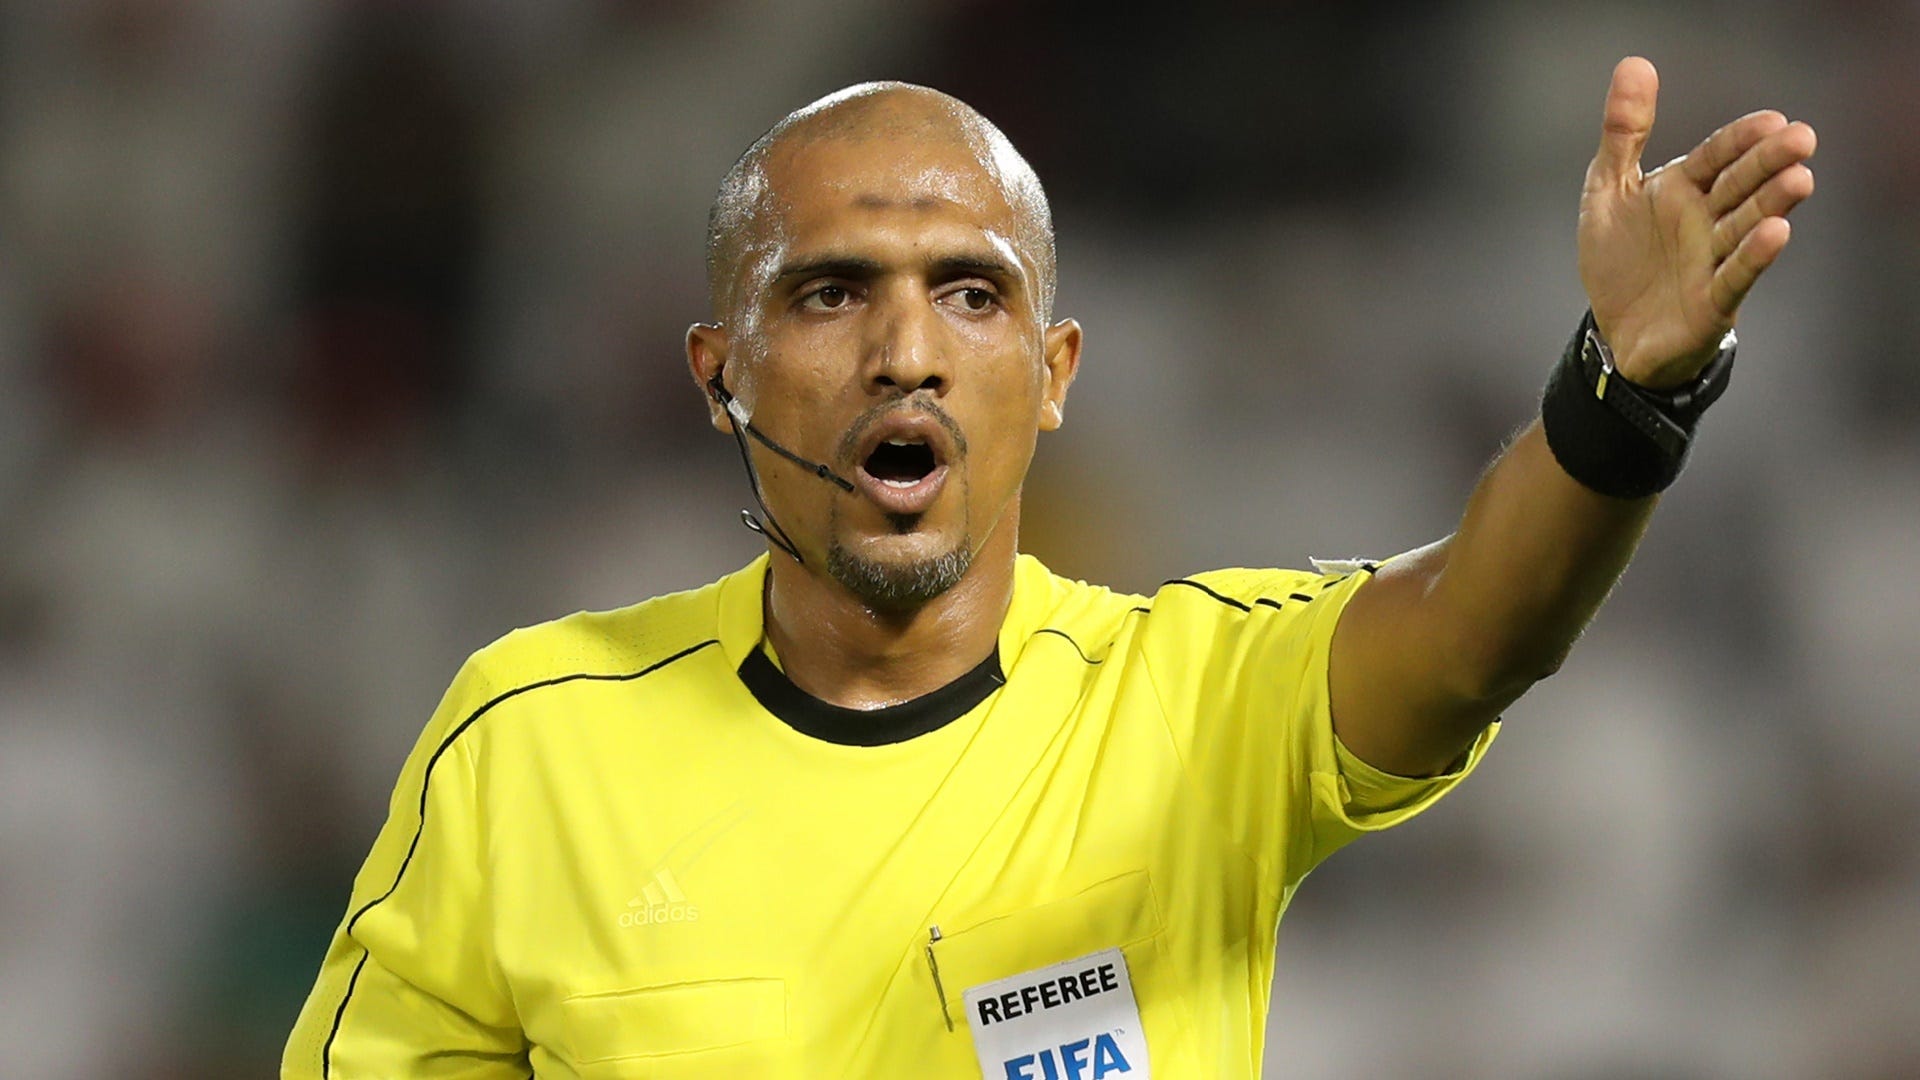 Referee Ahmed Al-Kaf | Qatar vs Syria | World Cup 2018 qualification (AFC)